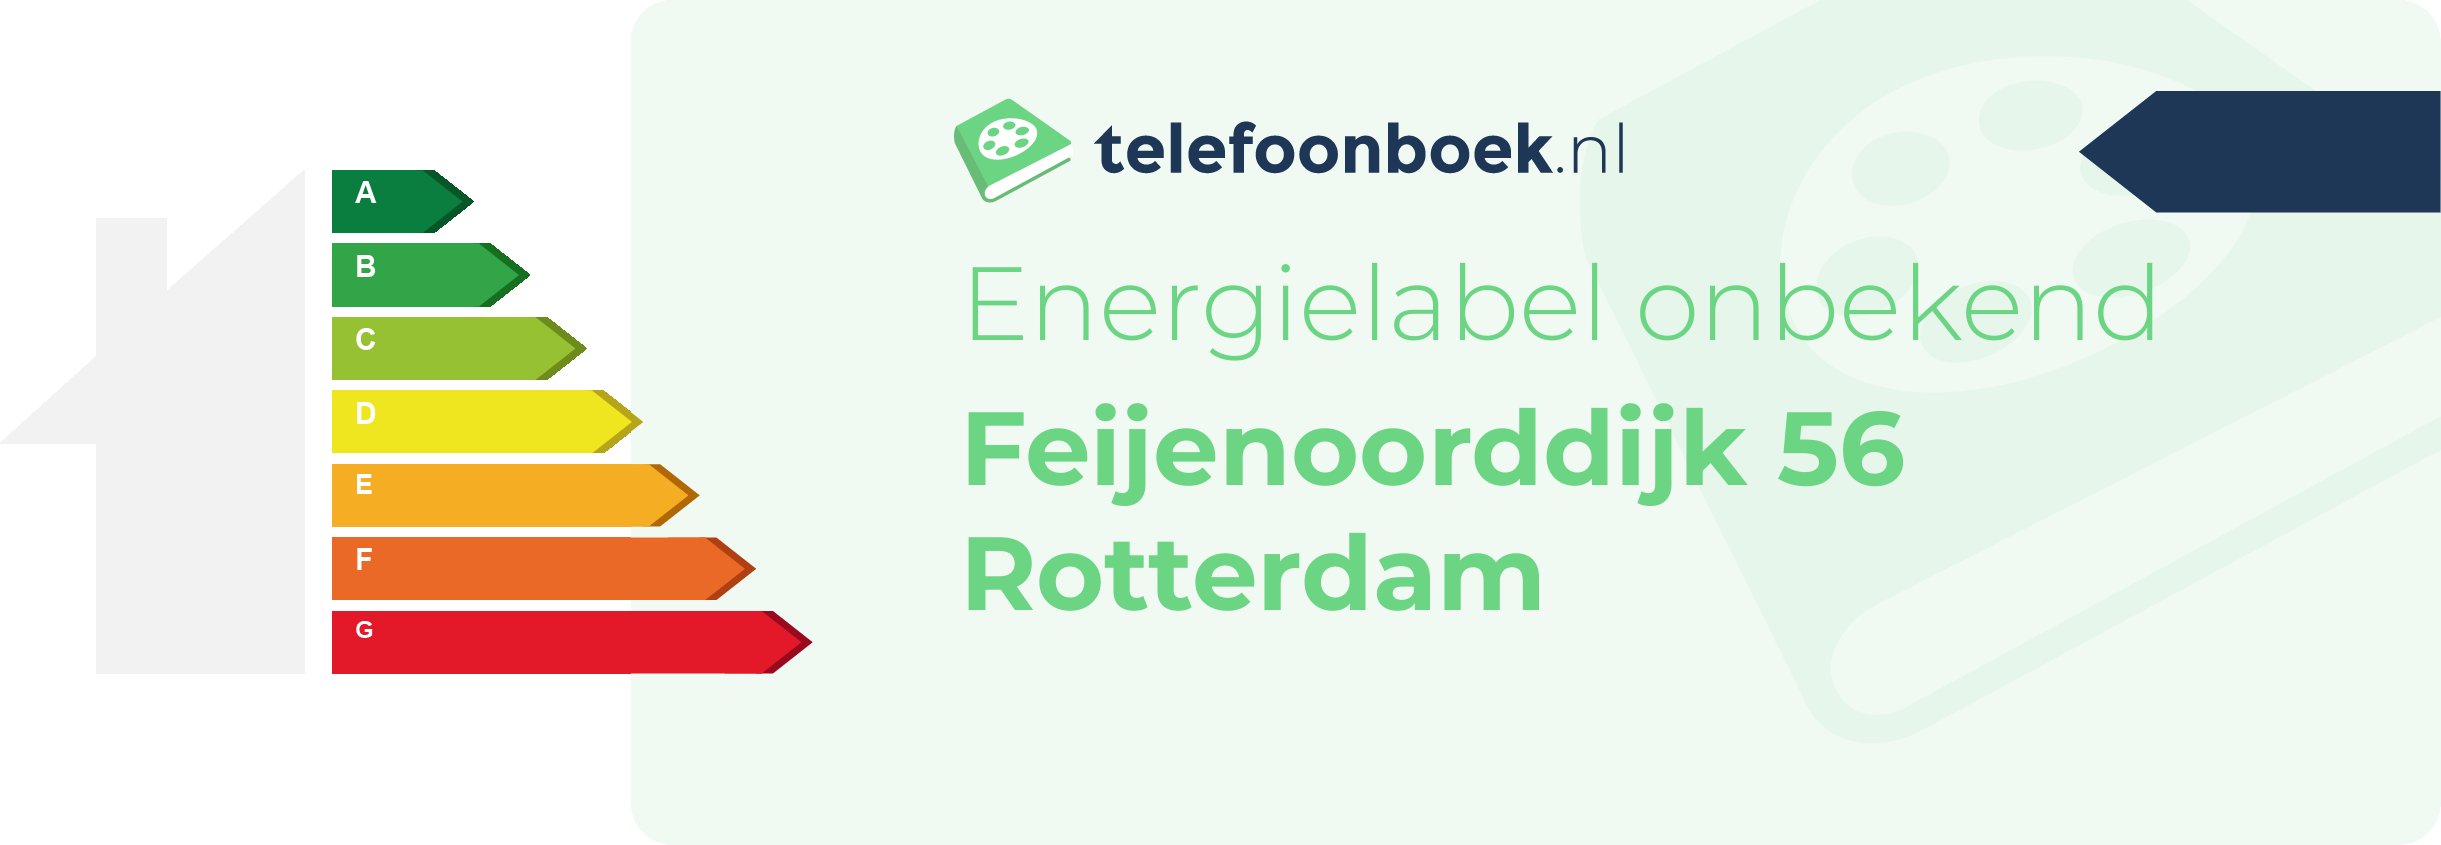 Energielabel Feijenoorddijk 56 Rotterdam